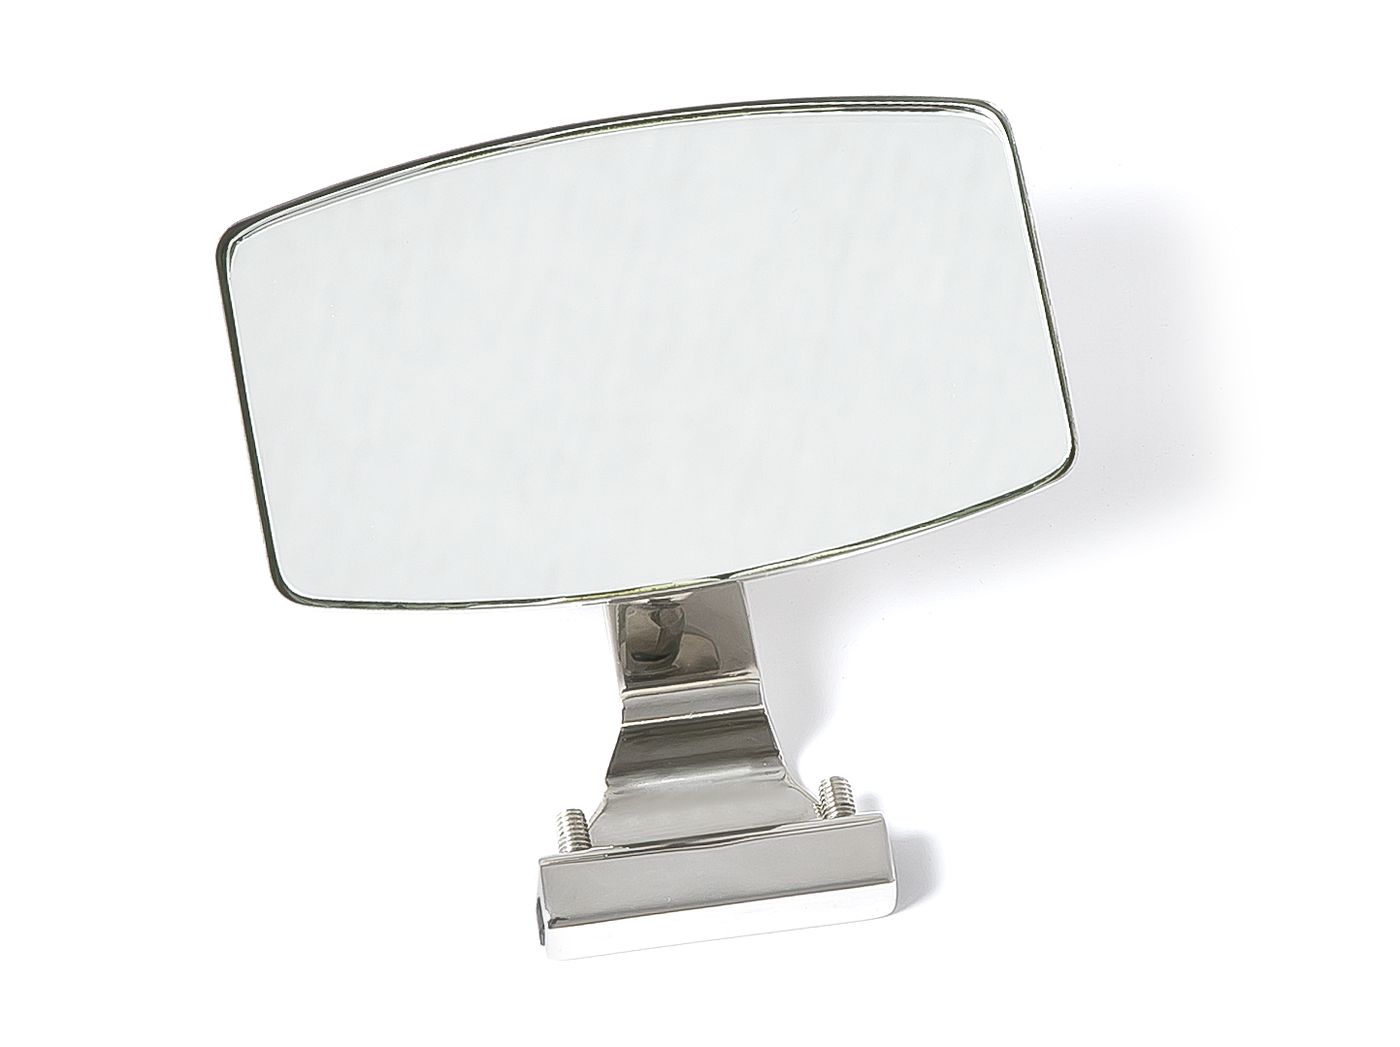 Klemmspiegel
Clamp on mirror
Rétroviseur par serrage
Klemspiege